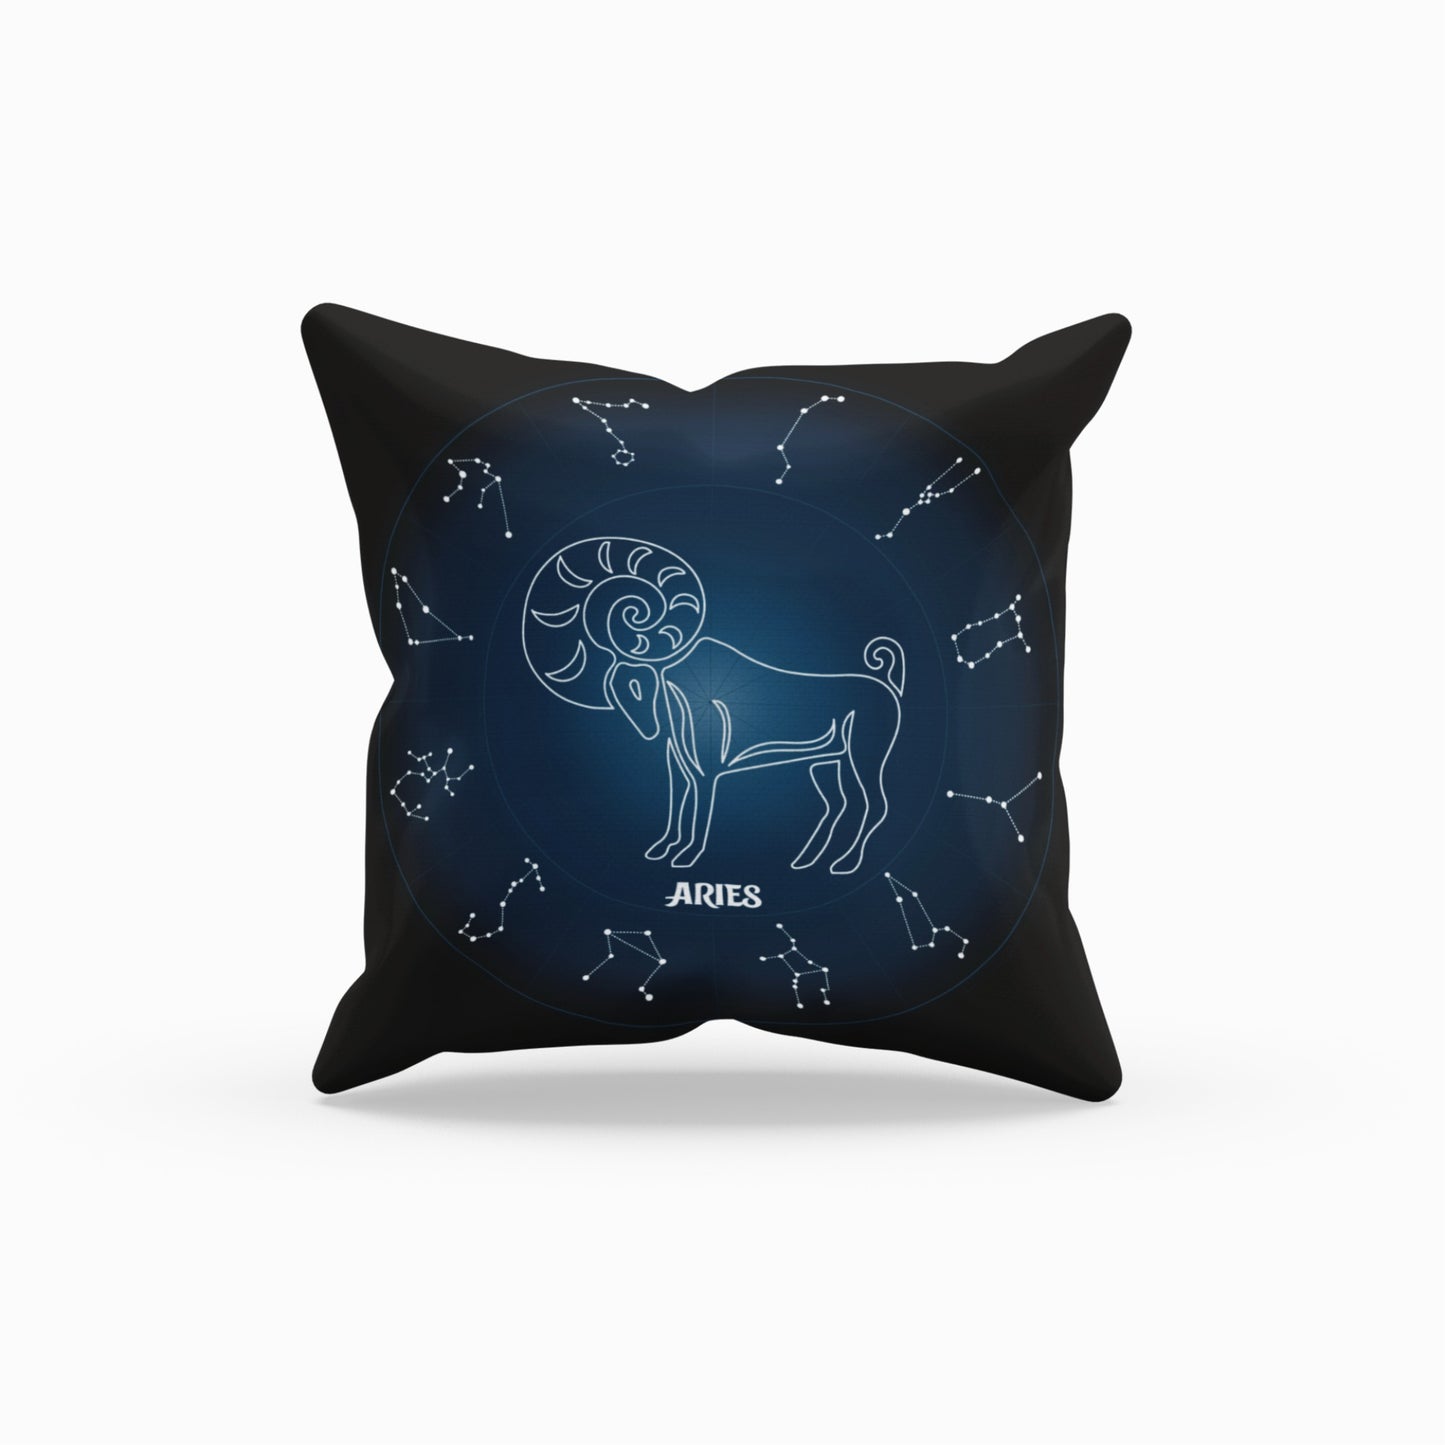 Homeezone's Aries Zodiac Theme Pillow